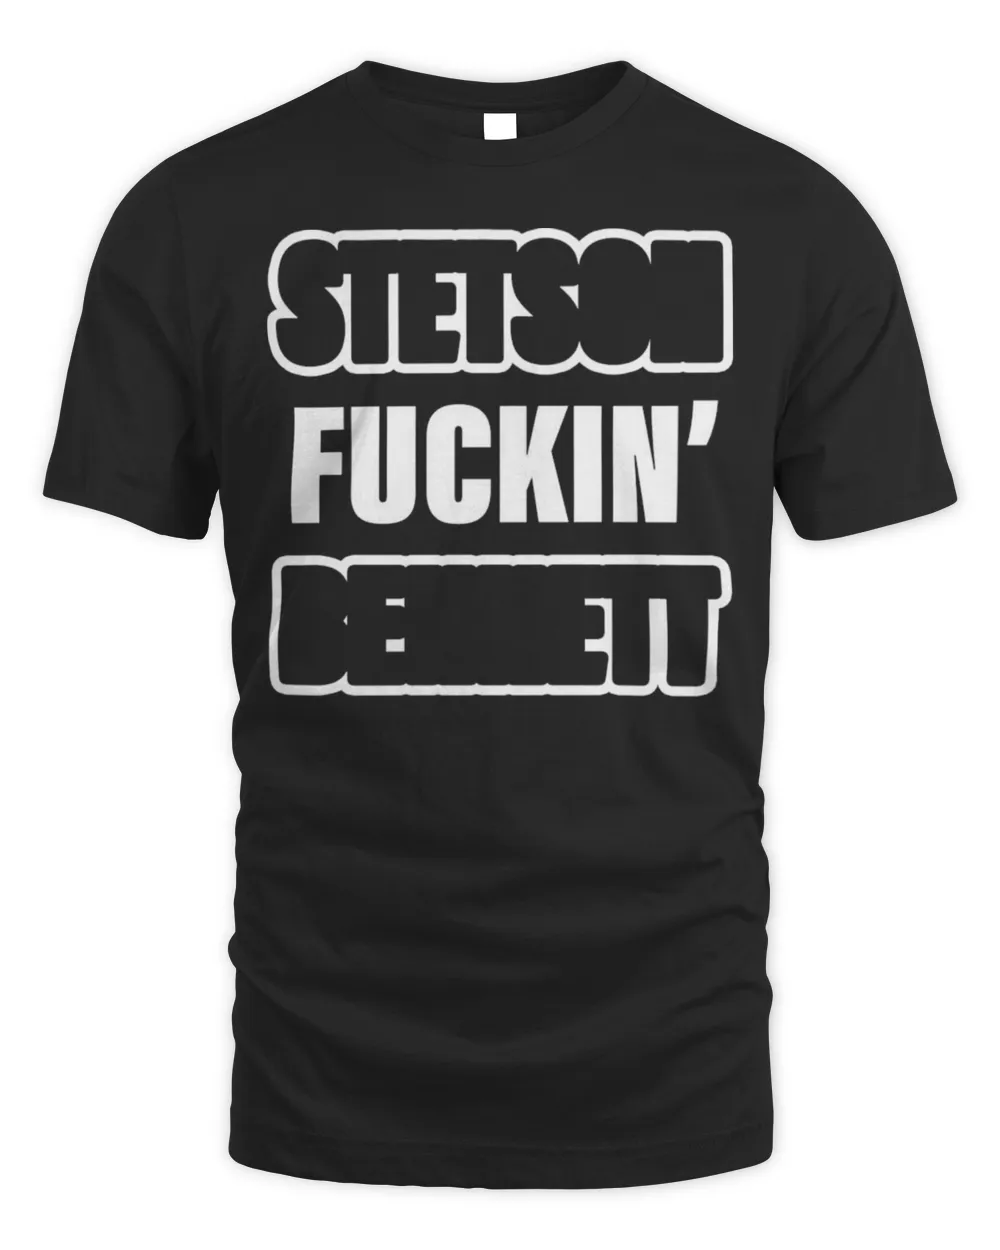 Stetson fuckin bennett shirt